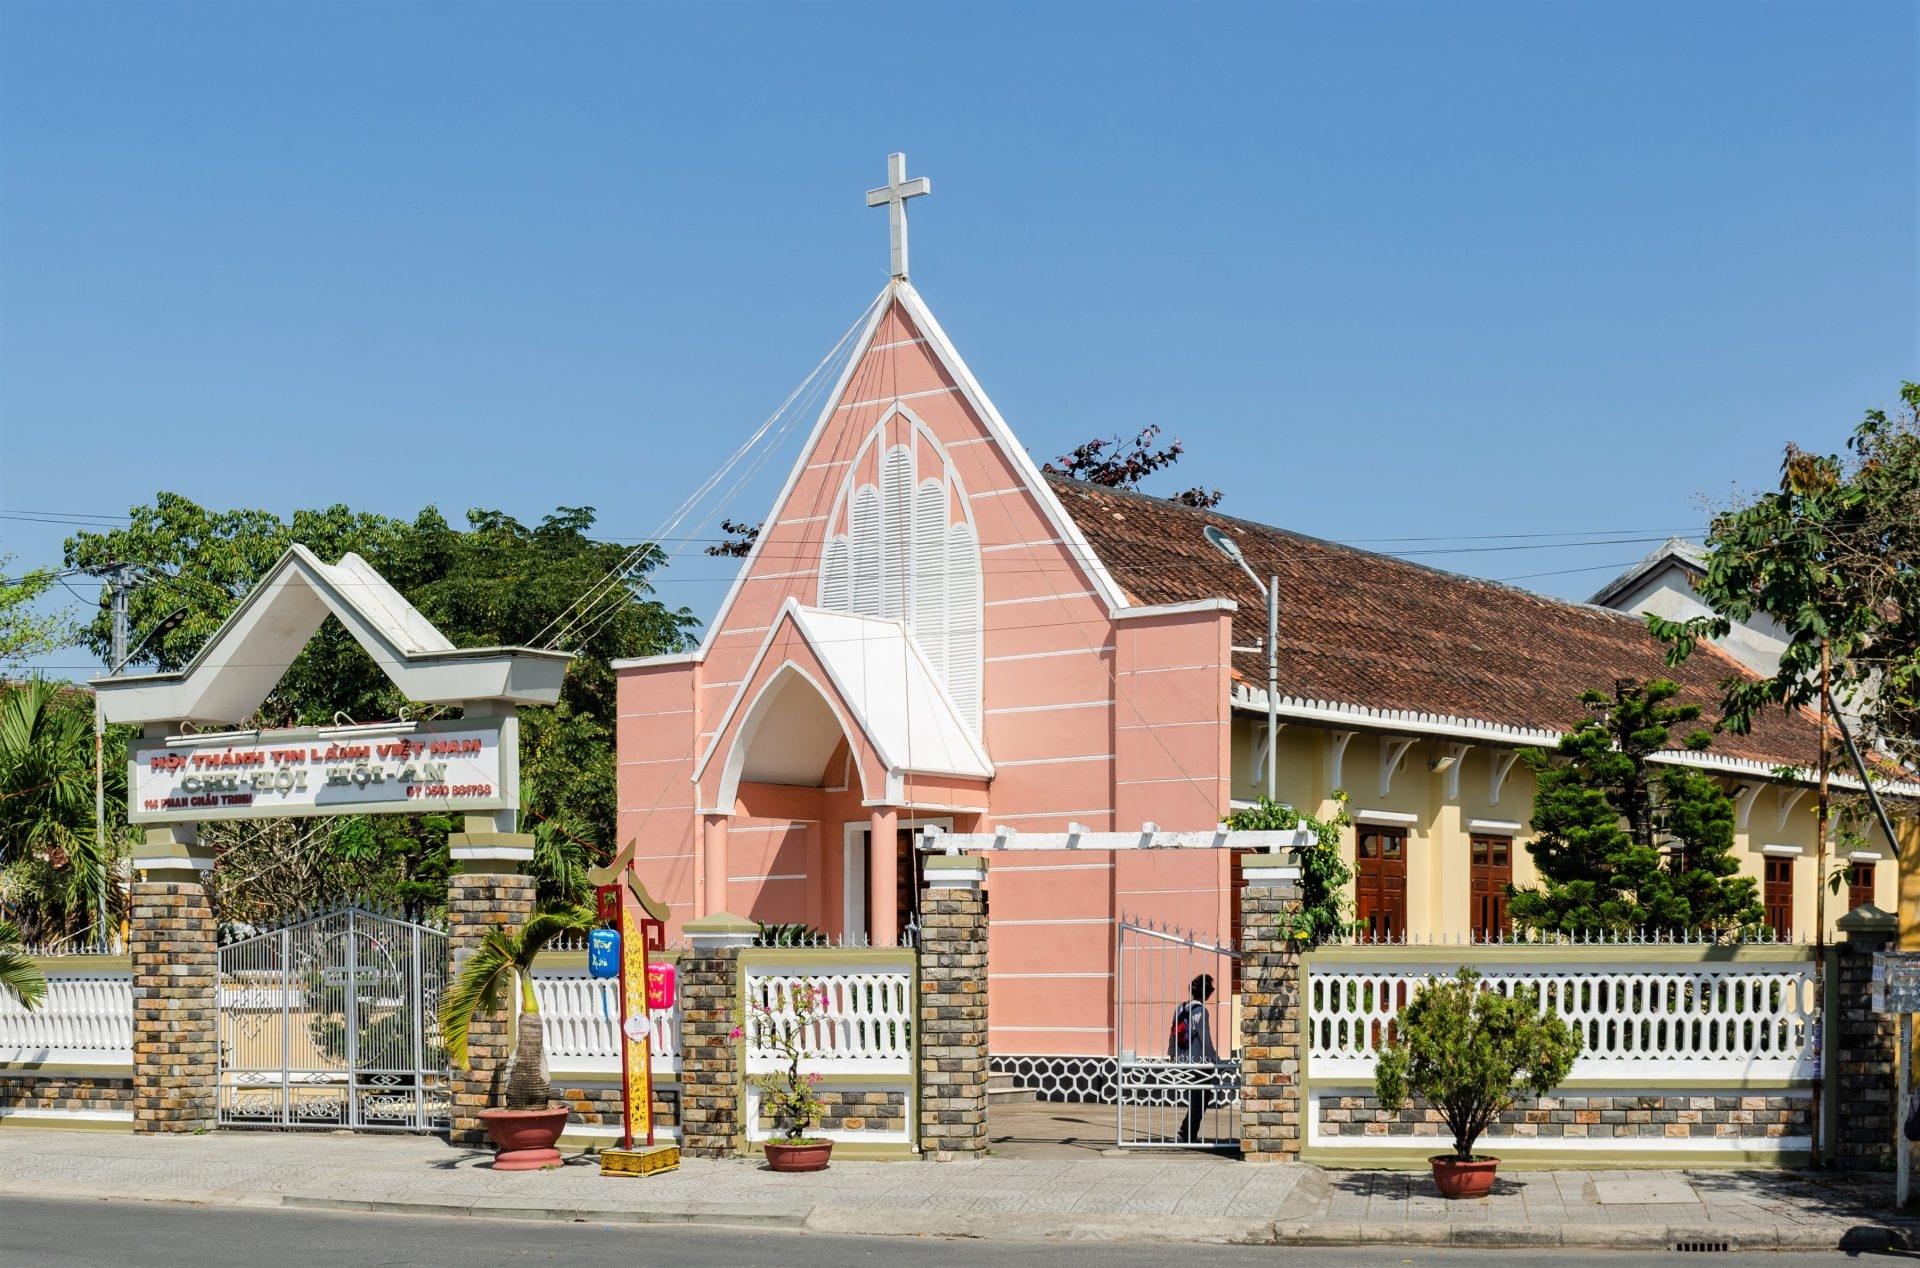 Autoridades do Vietnã expulsam fiéis para criar “zonas livres de cristãos”